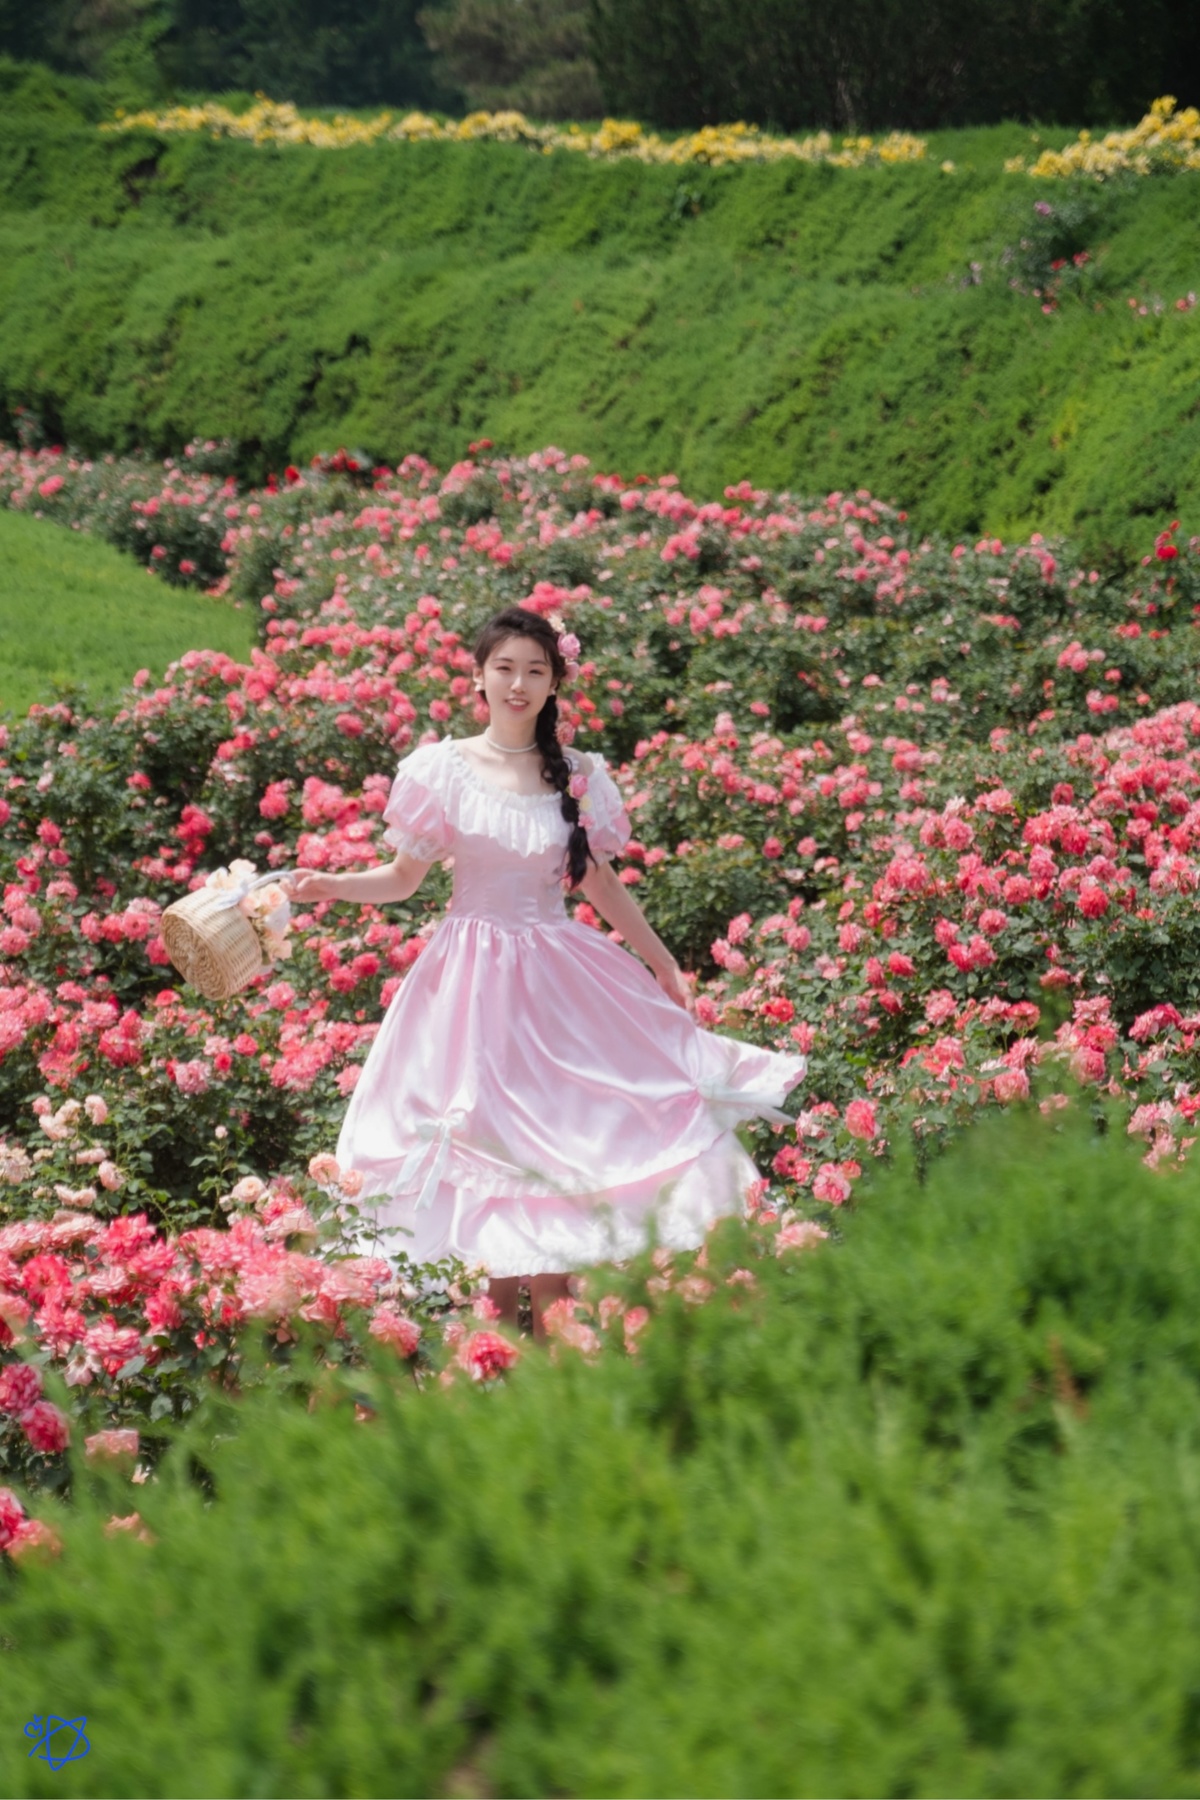 一位穿着白色连衣裙的年轻女子穿过一个玫瑰花坛 玫瑰花是粉红色的。